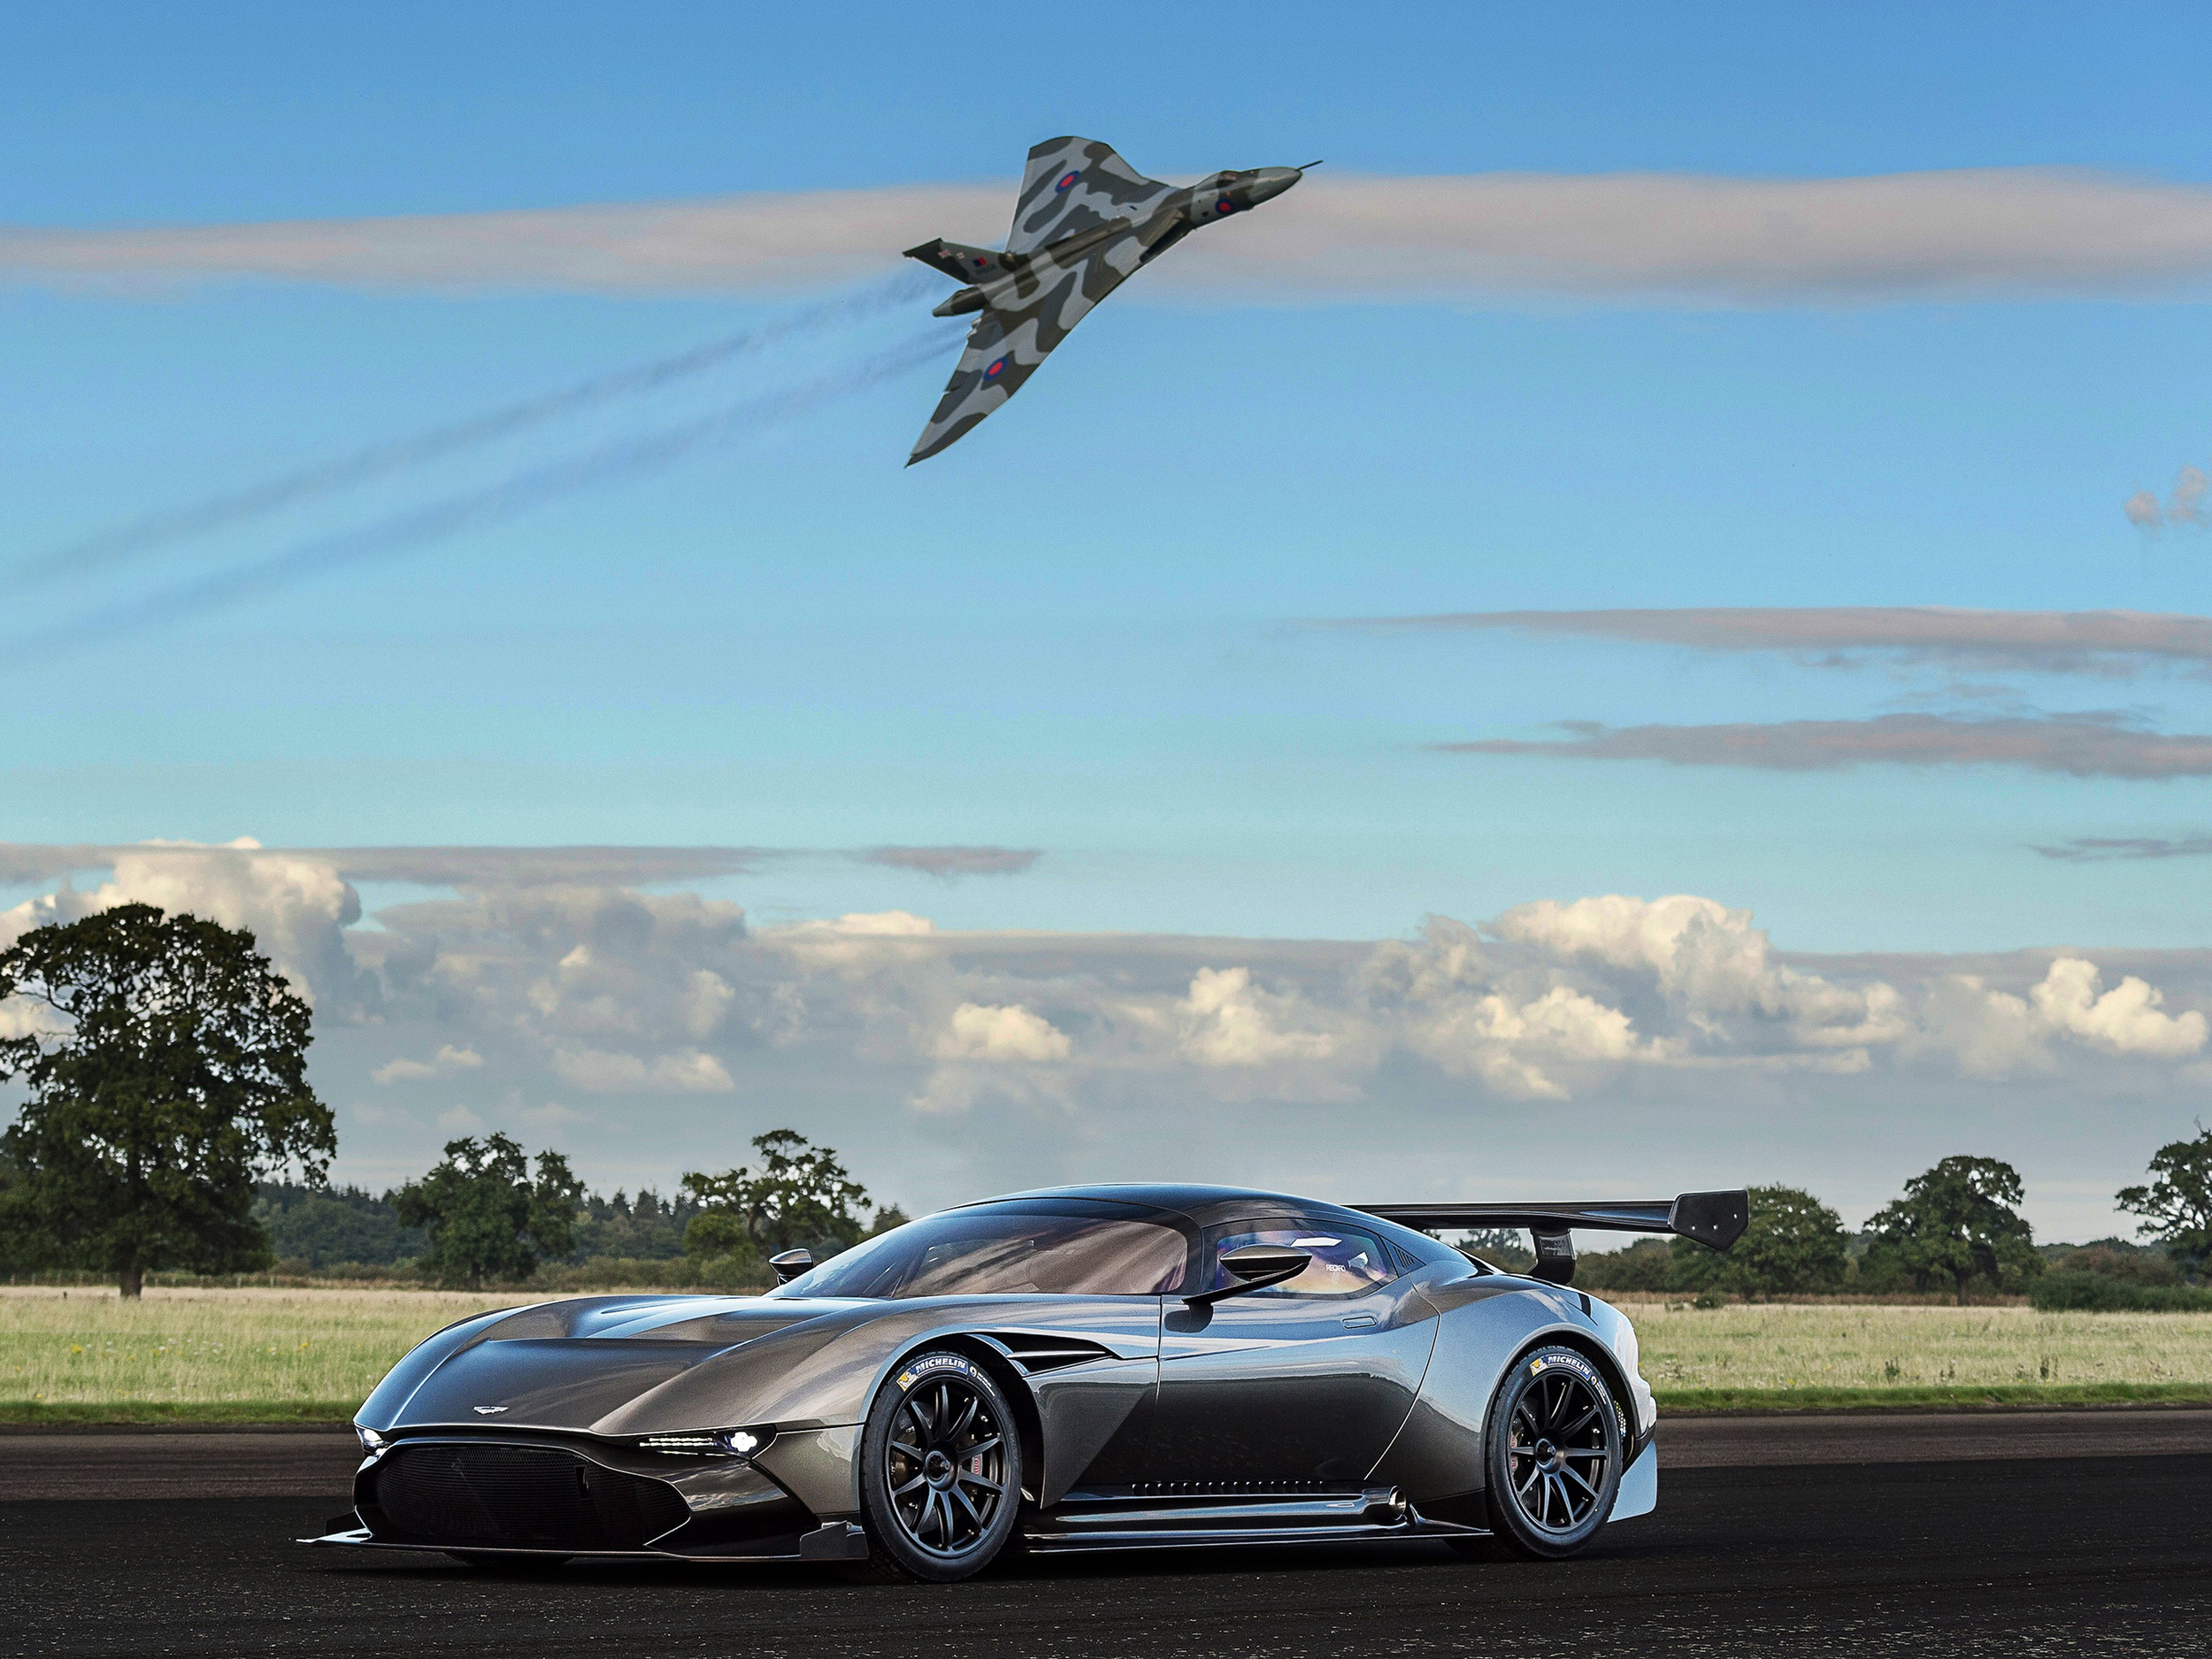 Aston Martin Vulcan meets Avro Vulcan